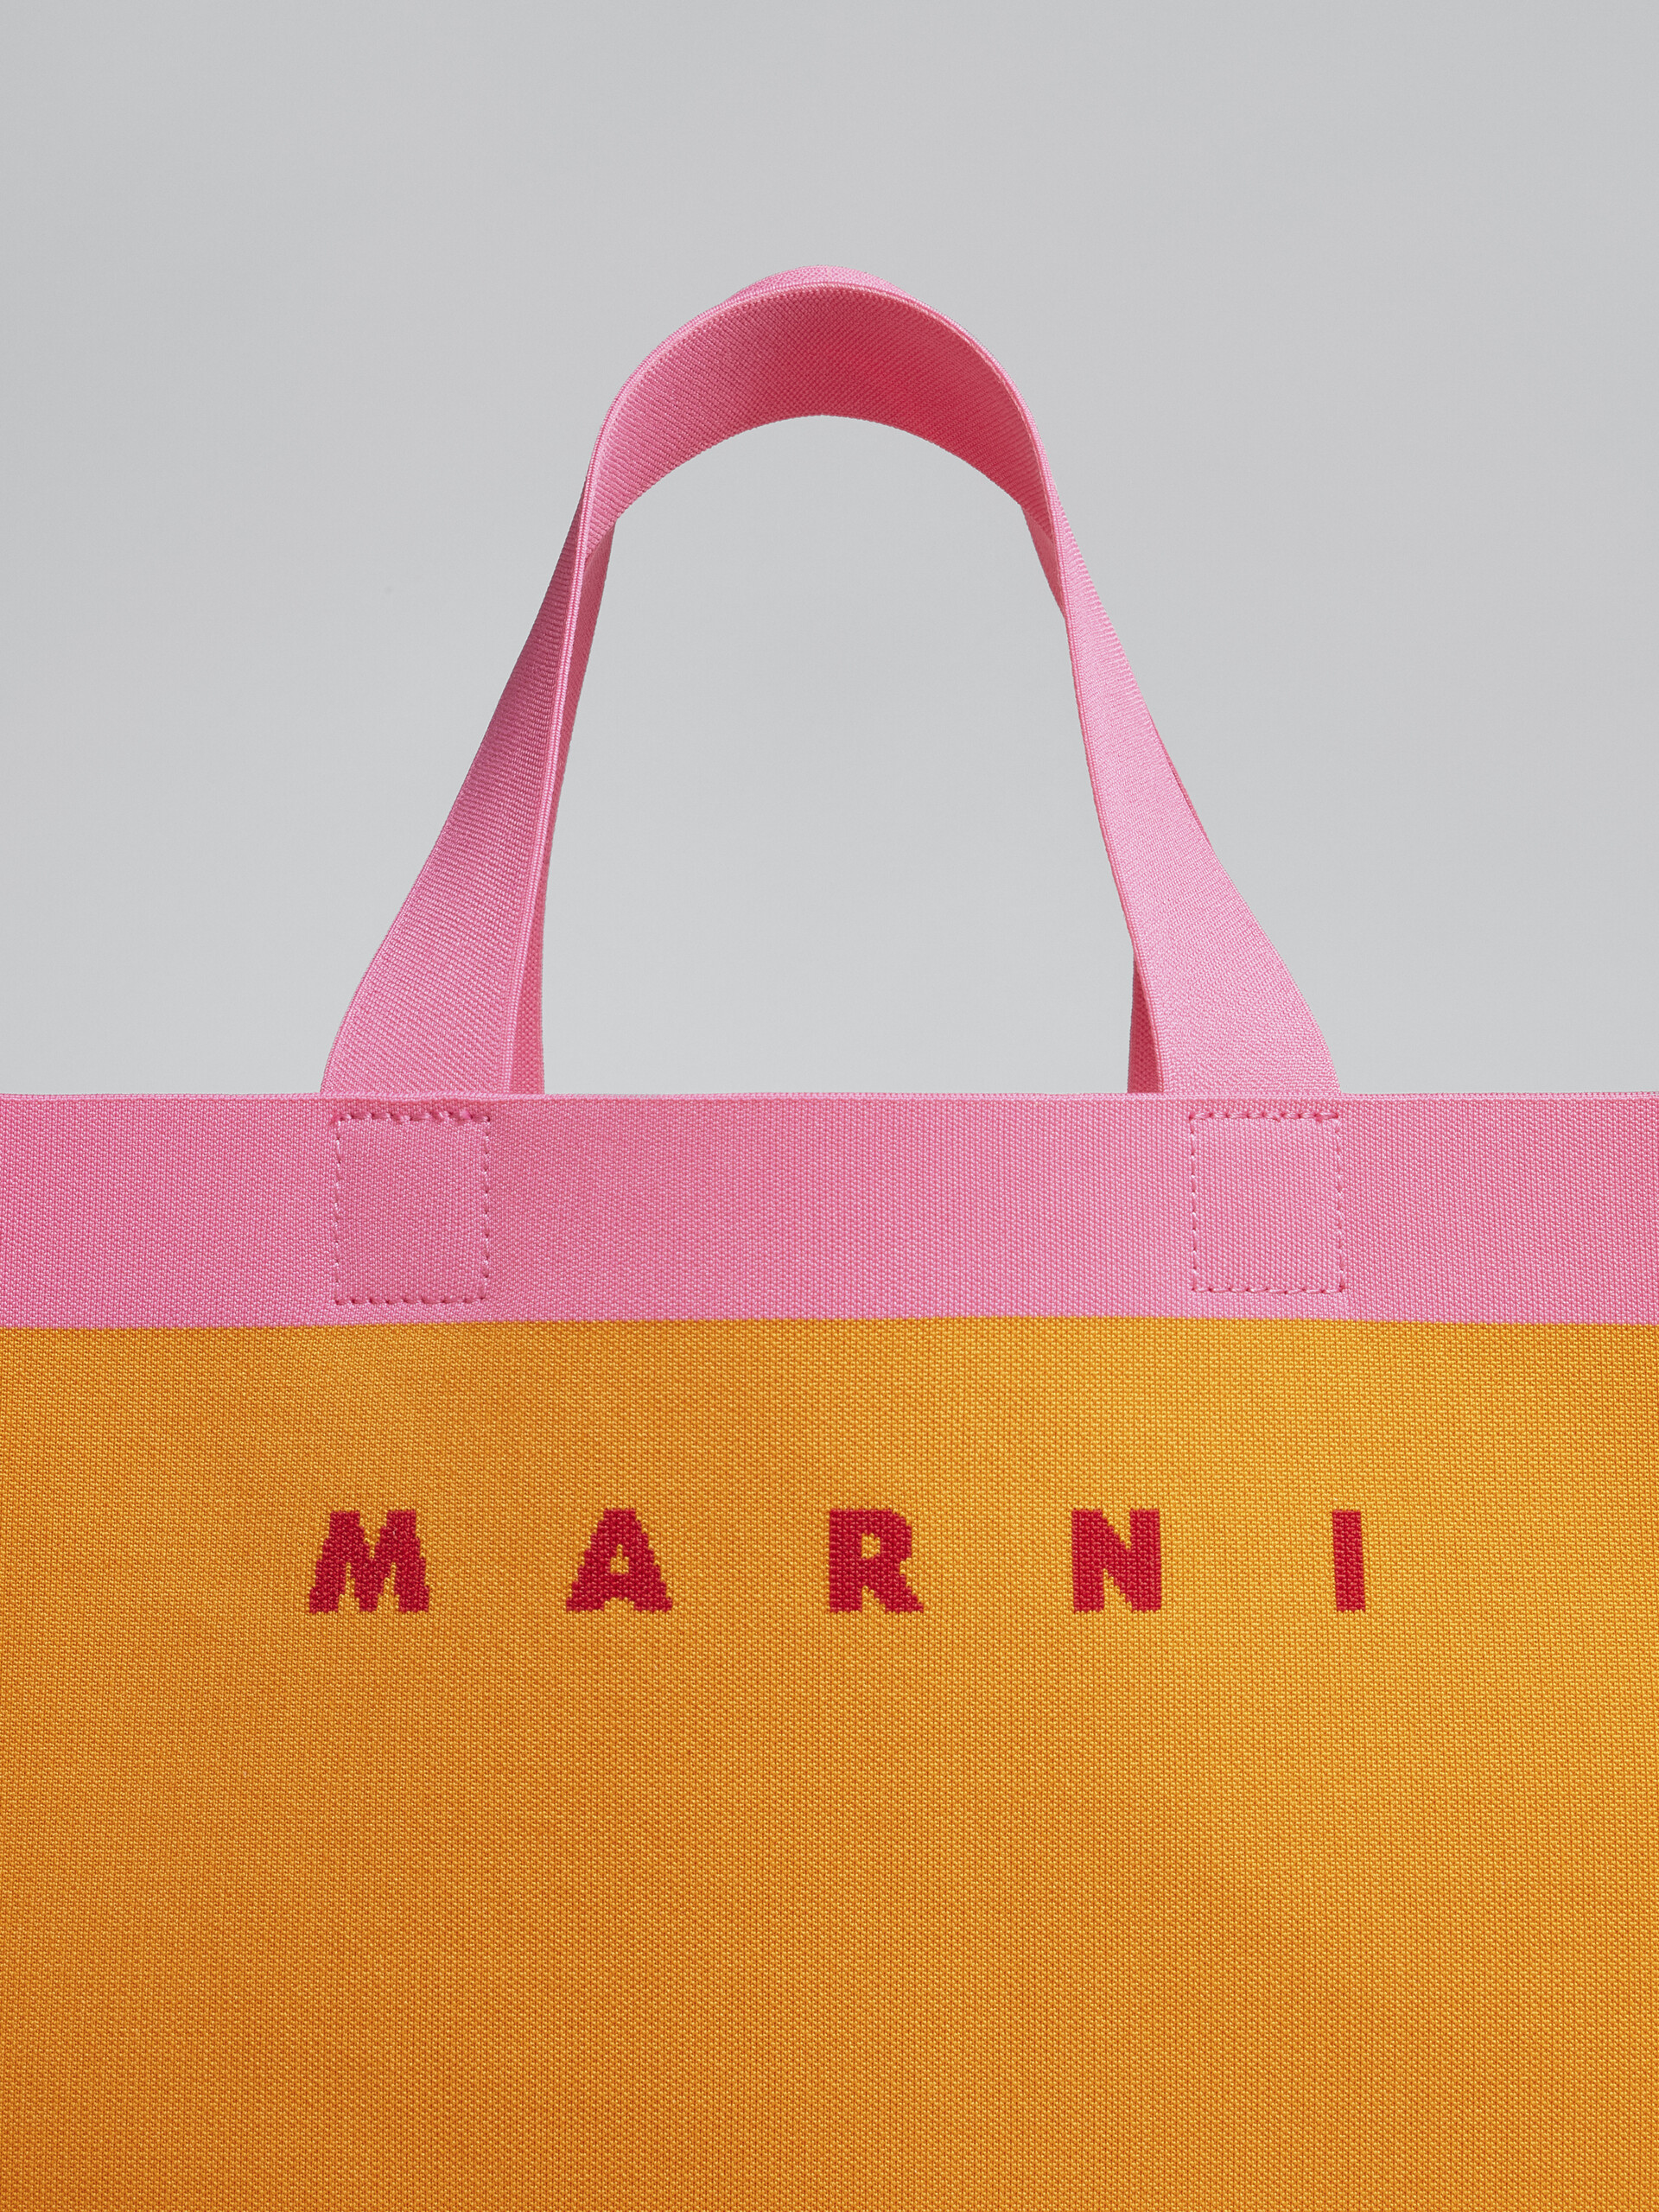 Orange and pink jacquard shopping bag - Shopping Bags - Image 5